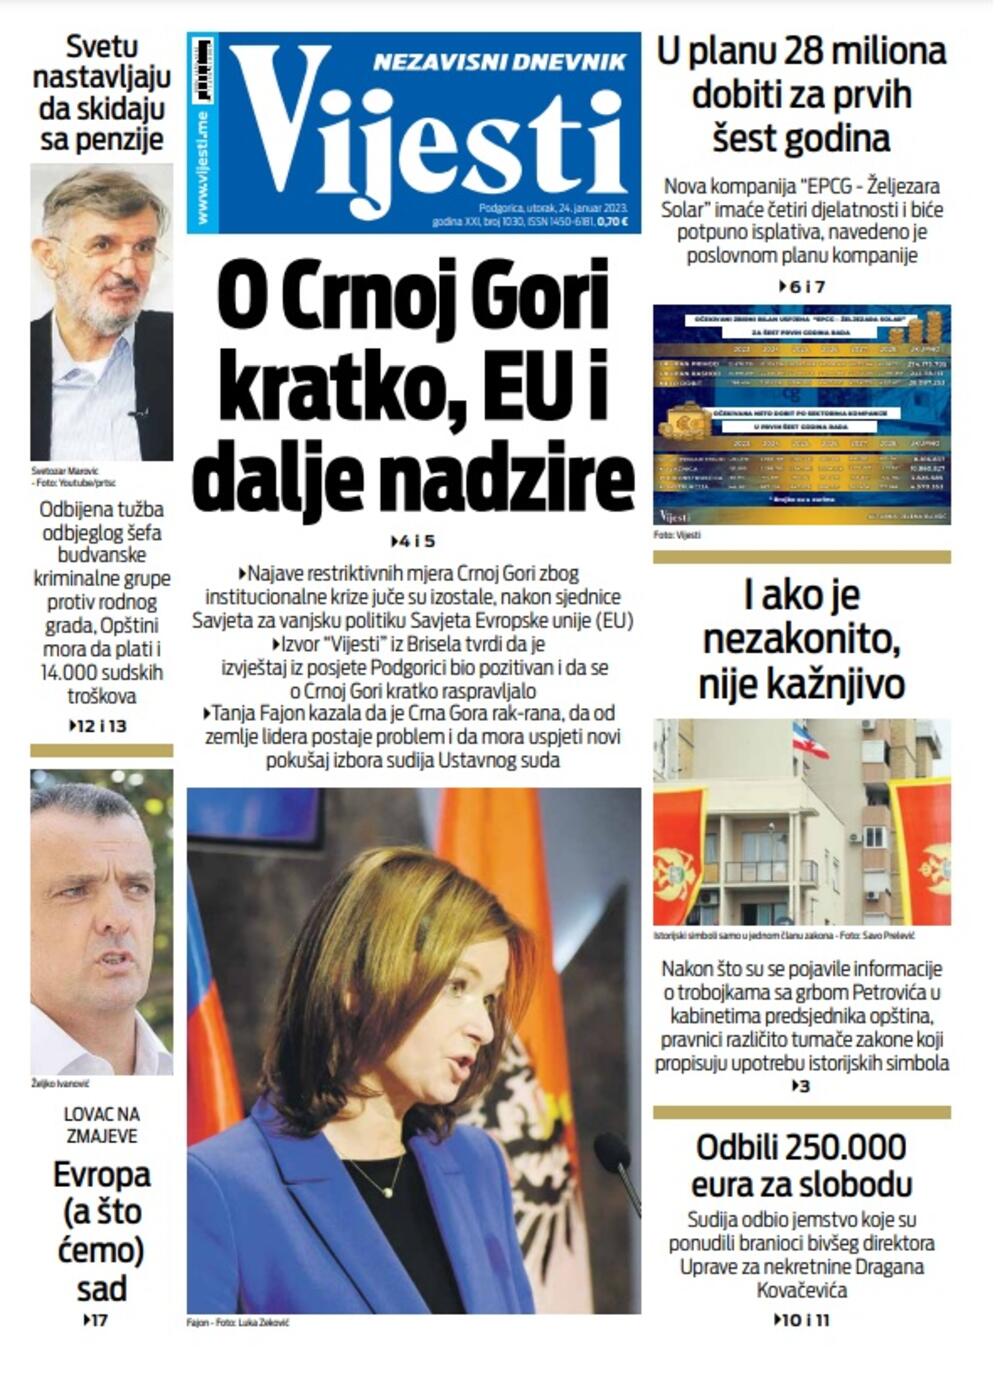 Naslovna strana "Vijesti" za 24. januar 2023., Foto: Vijesti